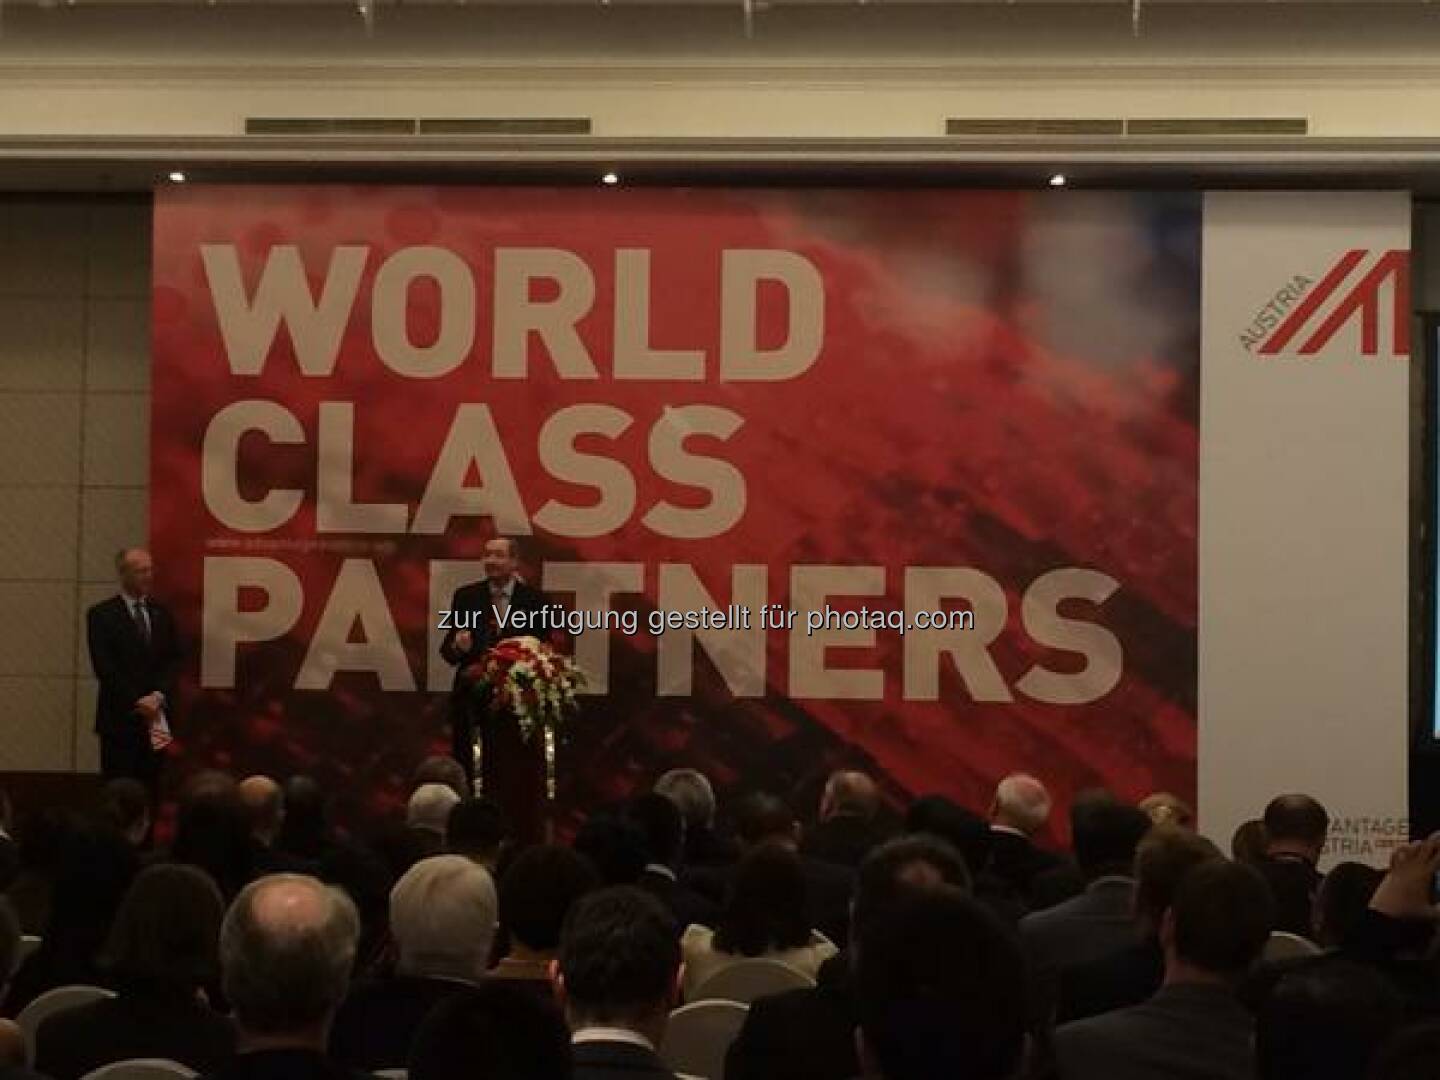 World Class Partners - über 250 Vertreter der österreichischen Business Community in #China lauschen den Ausführungen von Präsident #Leitl http://twitter.com/wko_aw/status/580986836266266624/photo/1  Source: http://twitter.com/wko_aw